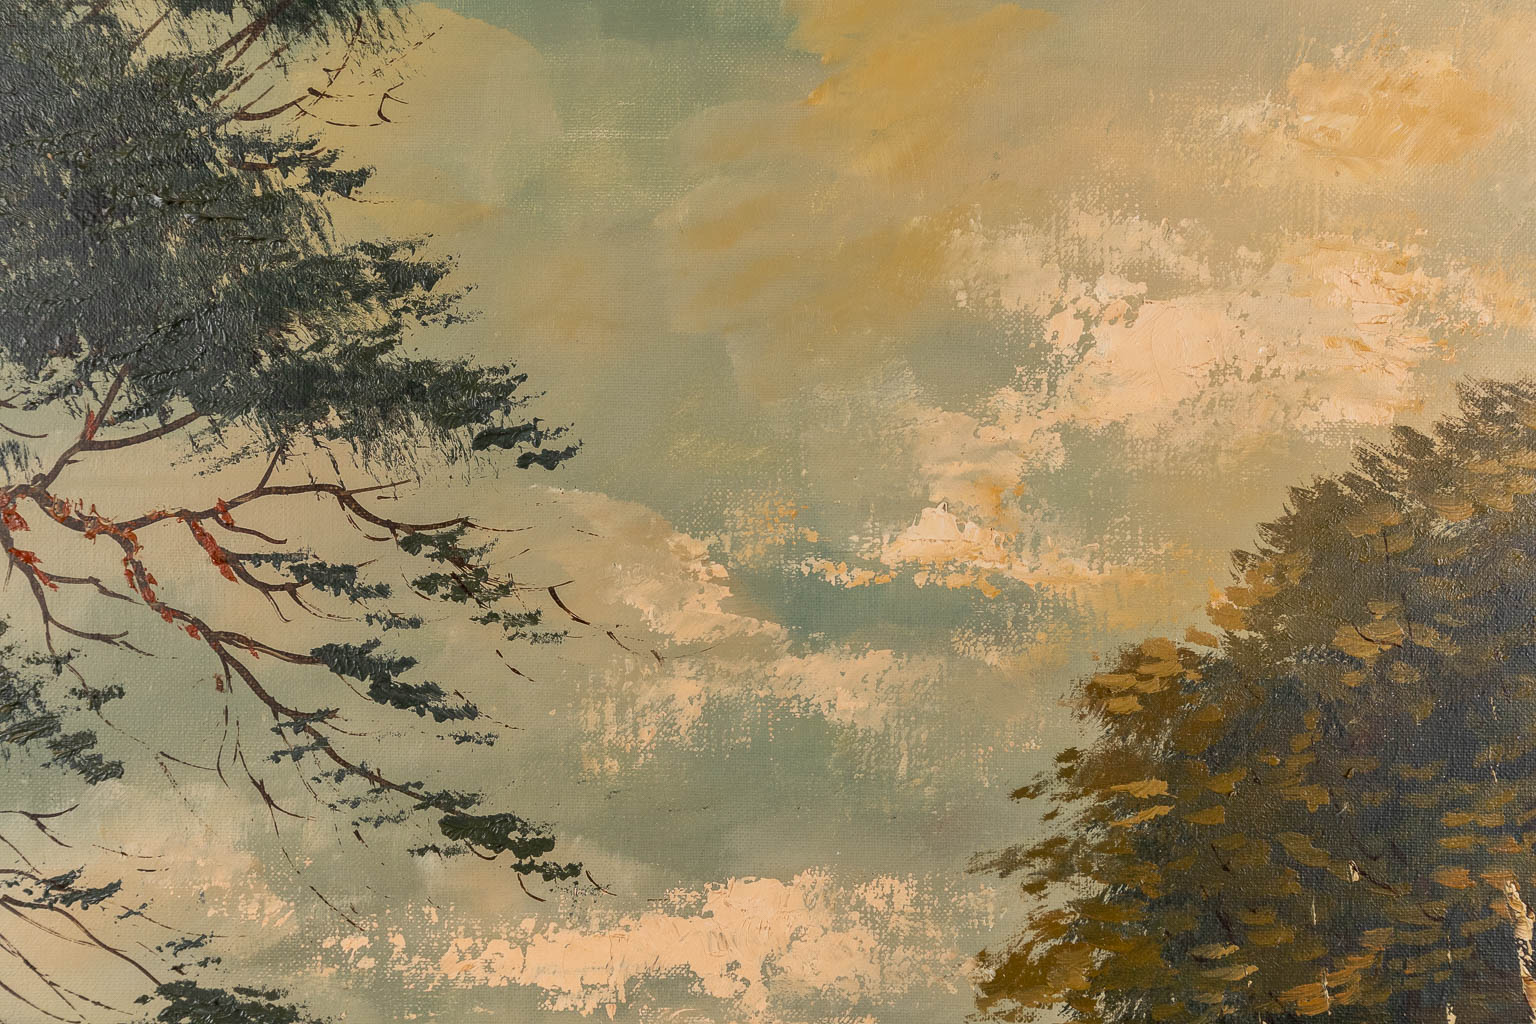 Zicht op de heide met berkenbomen, olie op doek. Getekend B. Van Rijn. 20ste eeuw. (W:110 x H:70 cm)